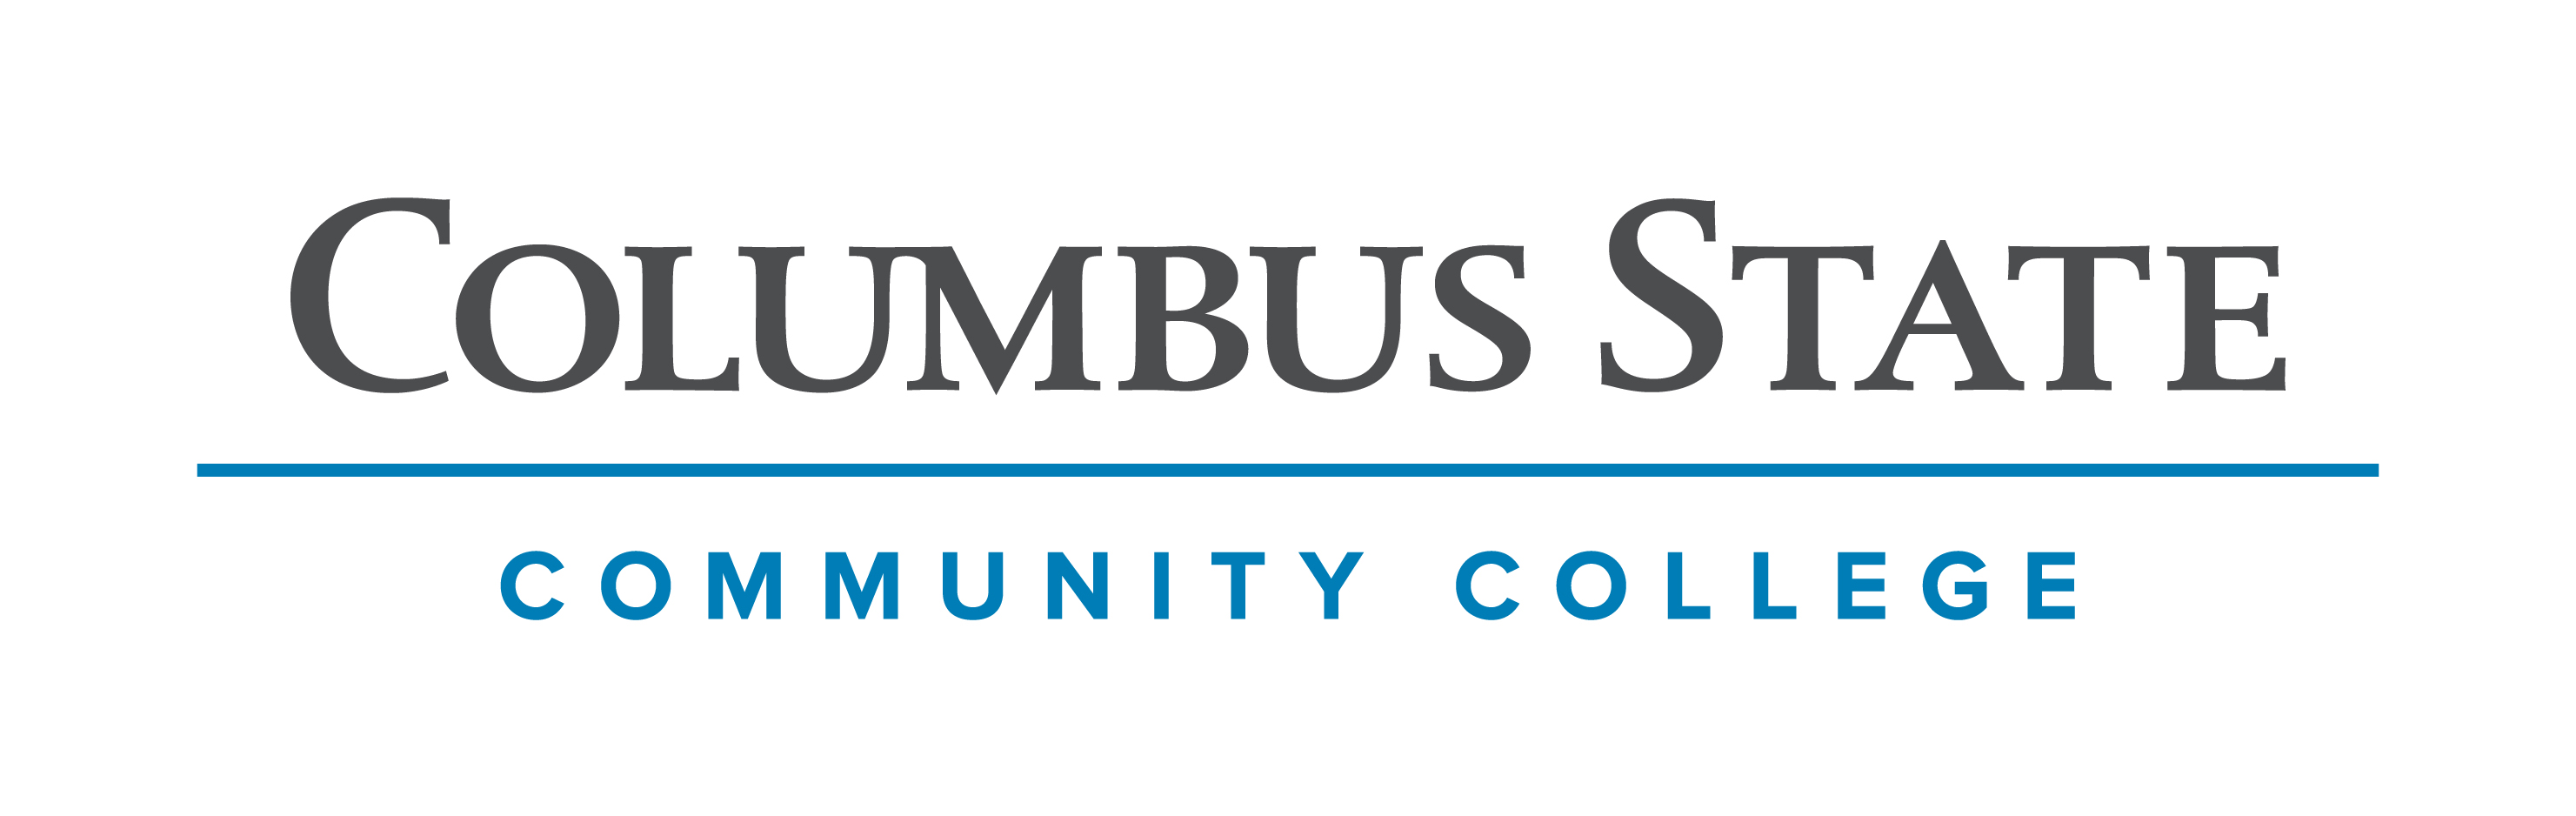 Columbus State Community College (enUS)